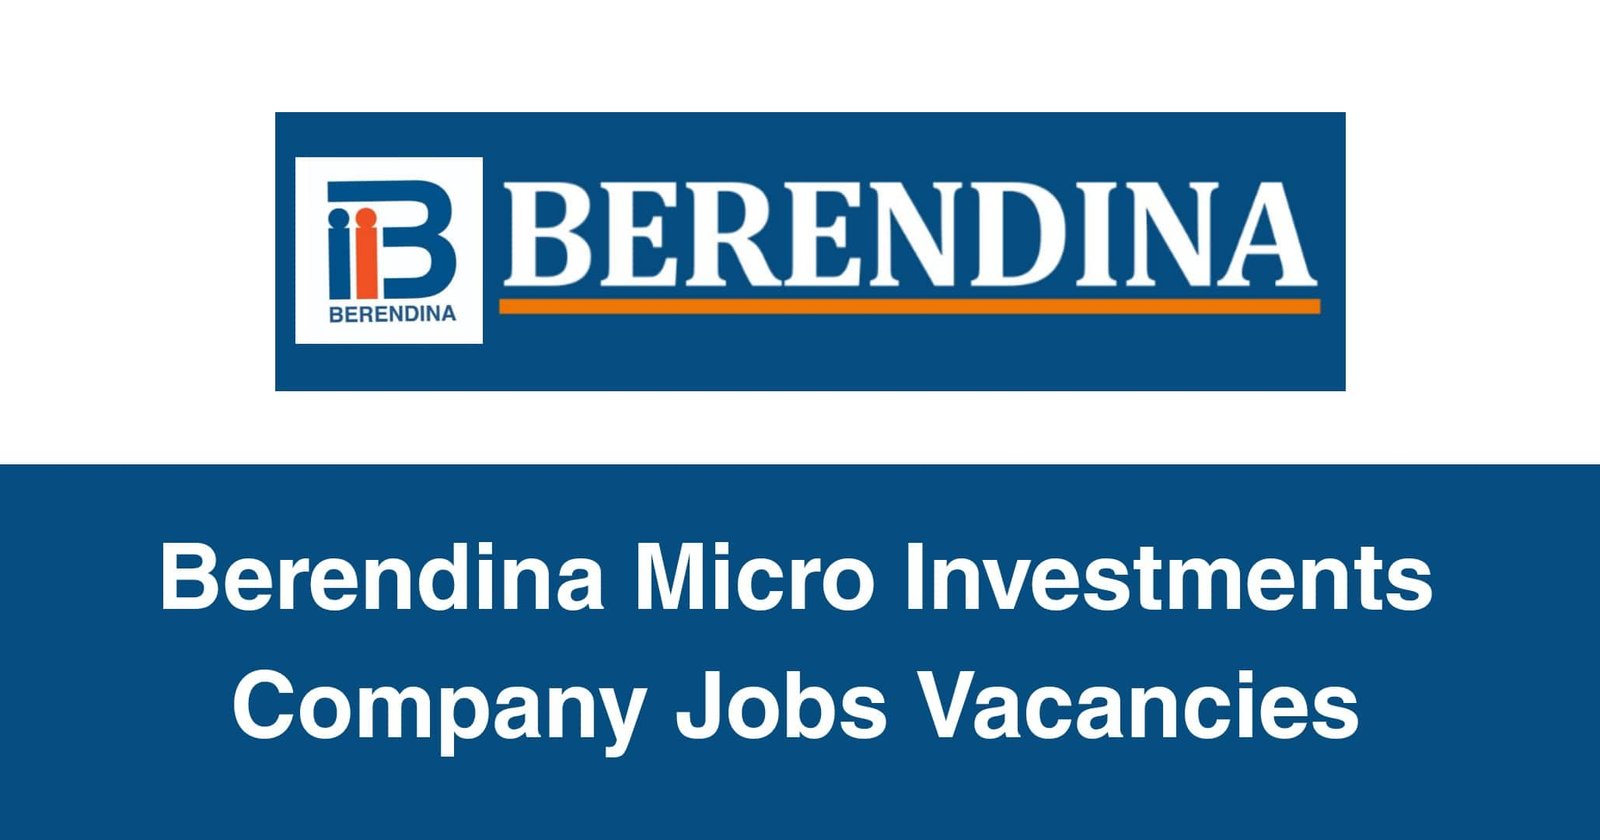 Berendina Micro Investments Company Jobs Vacancies